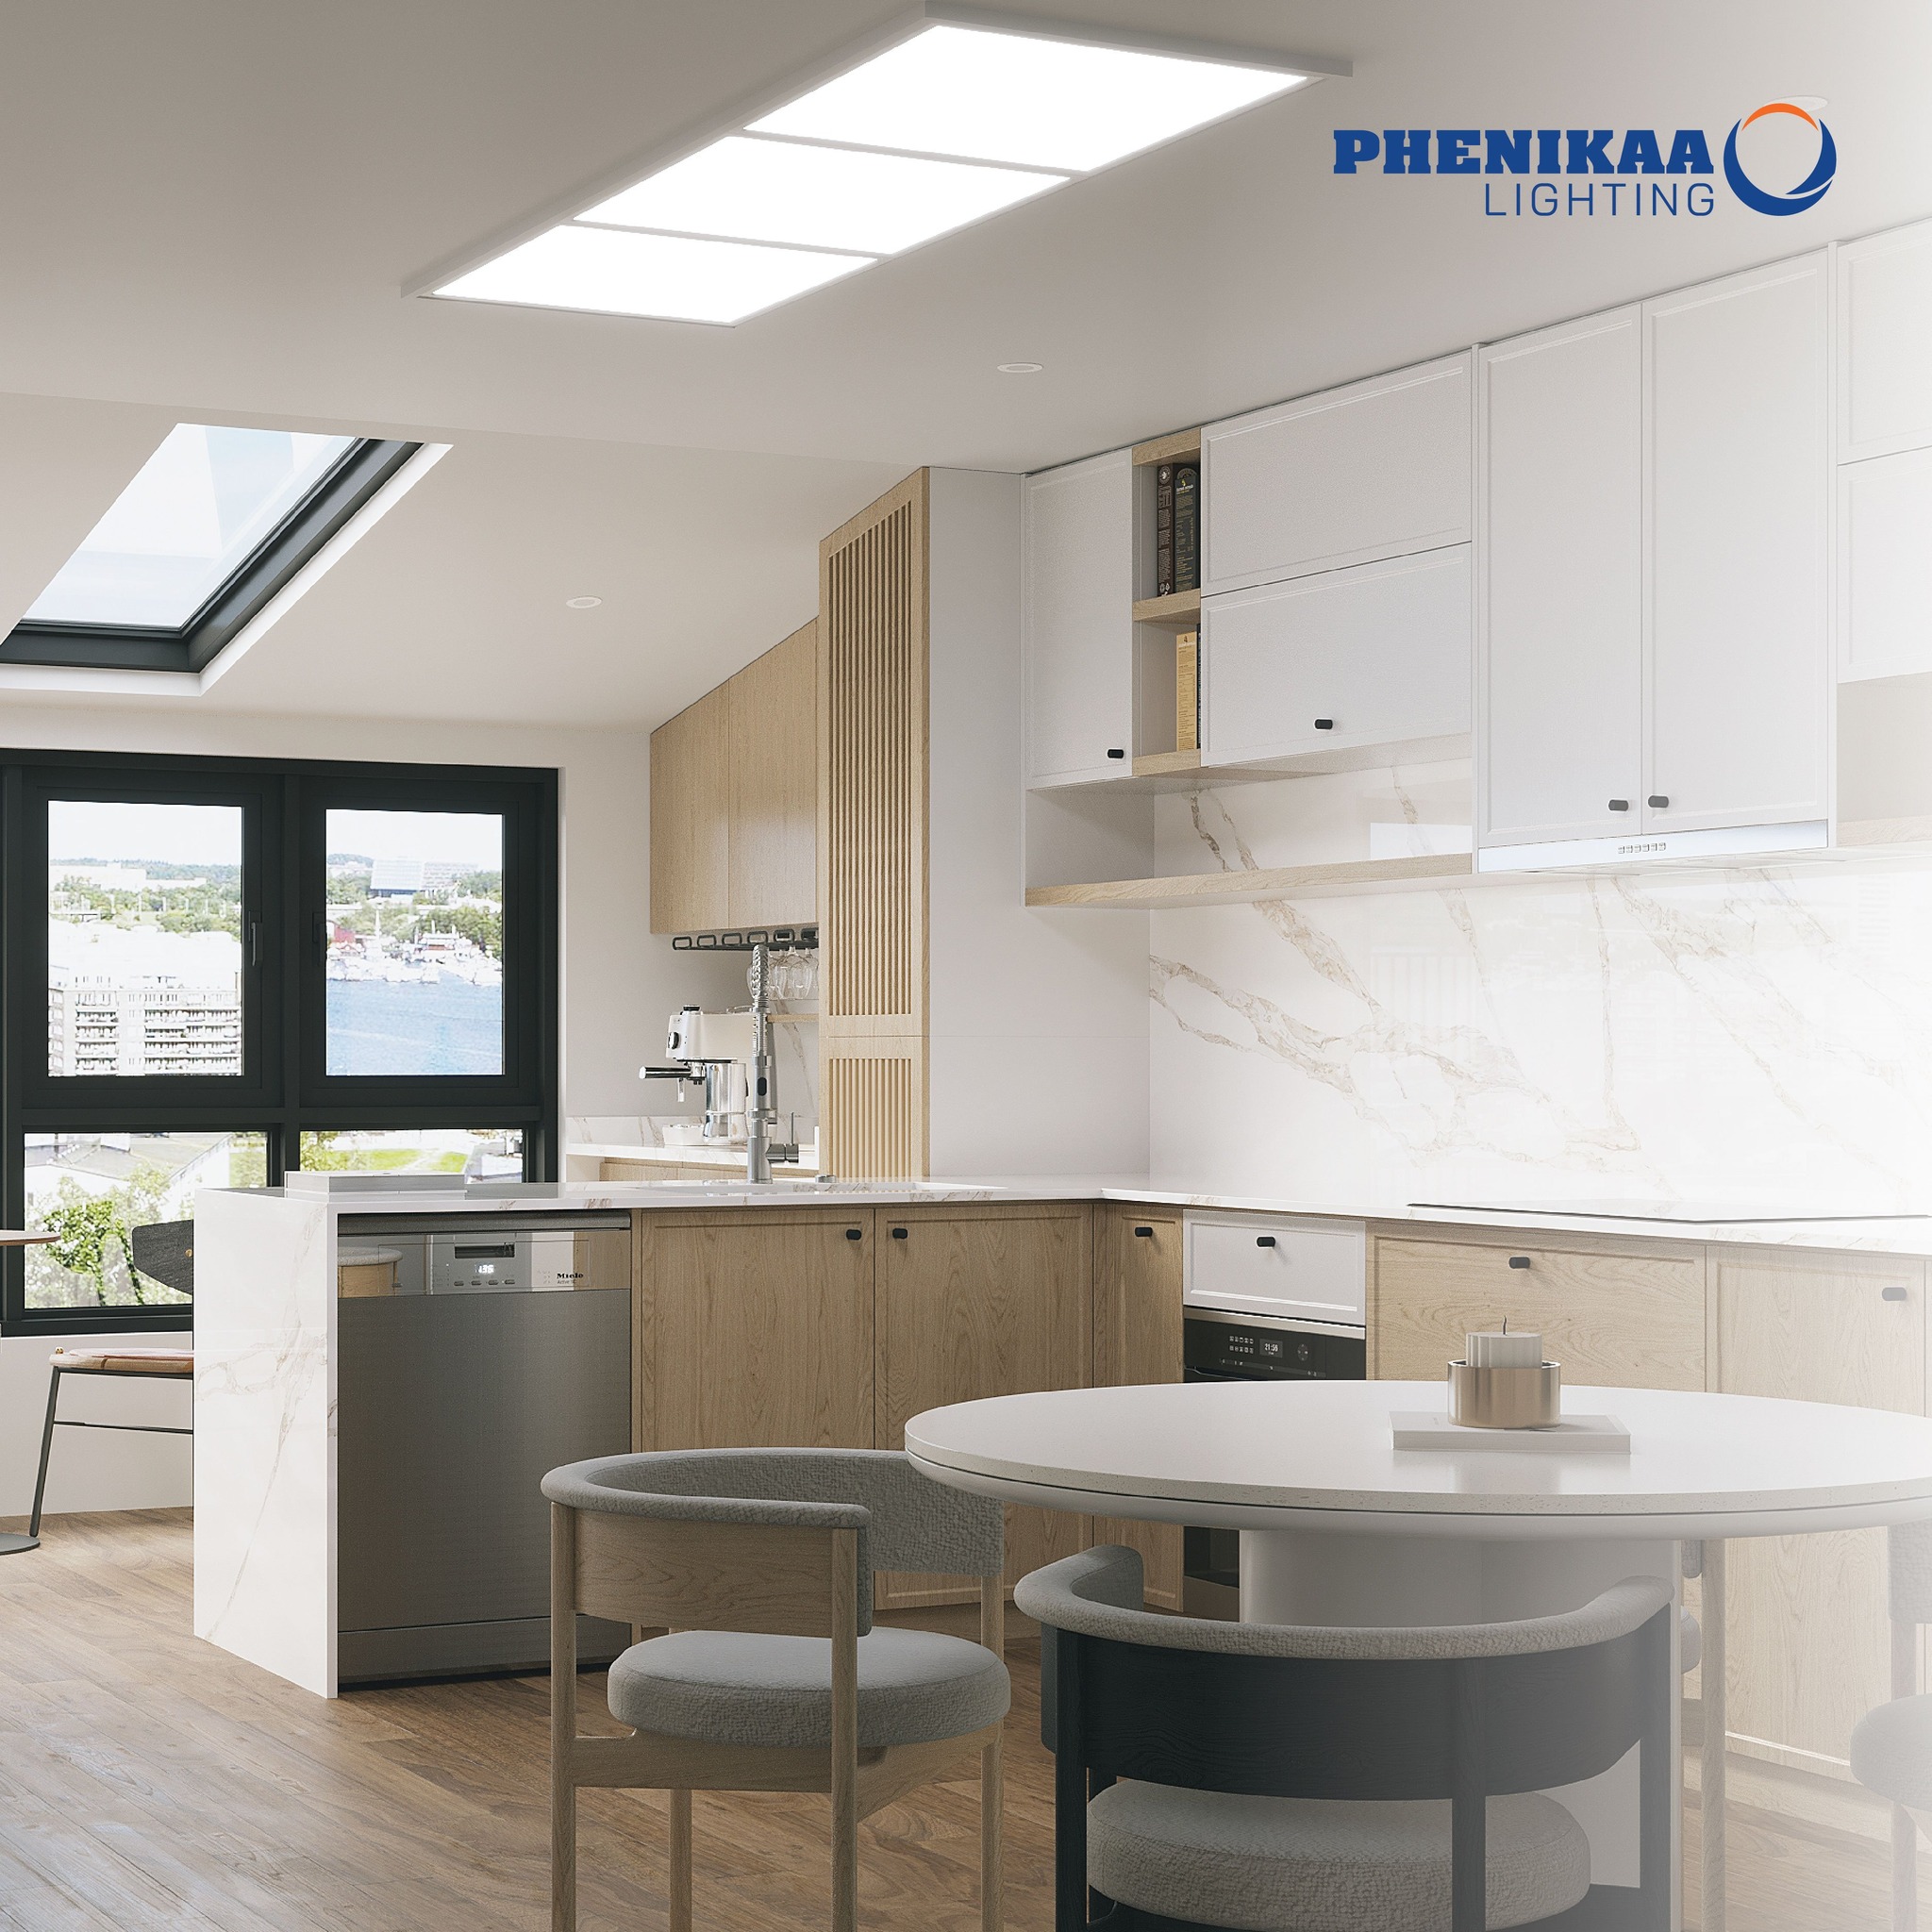 Không gian nhà bếp được chiếu sáng tối đa và tối ưu về diện tích không gian với đèn LED panel